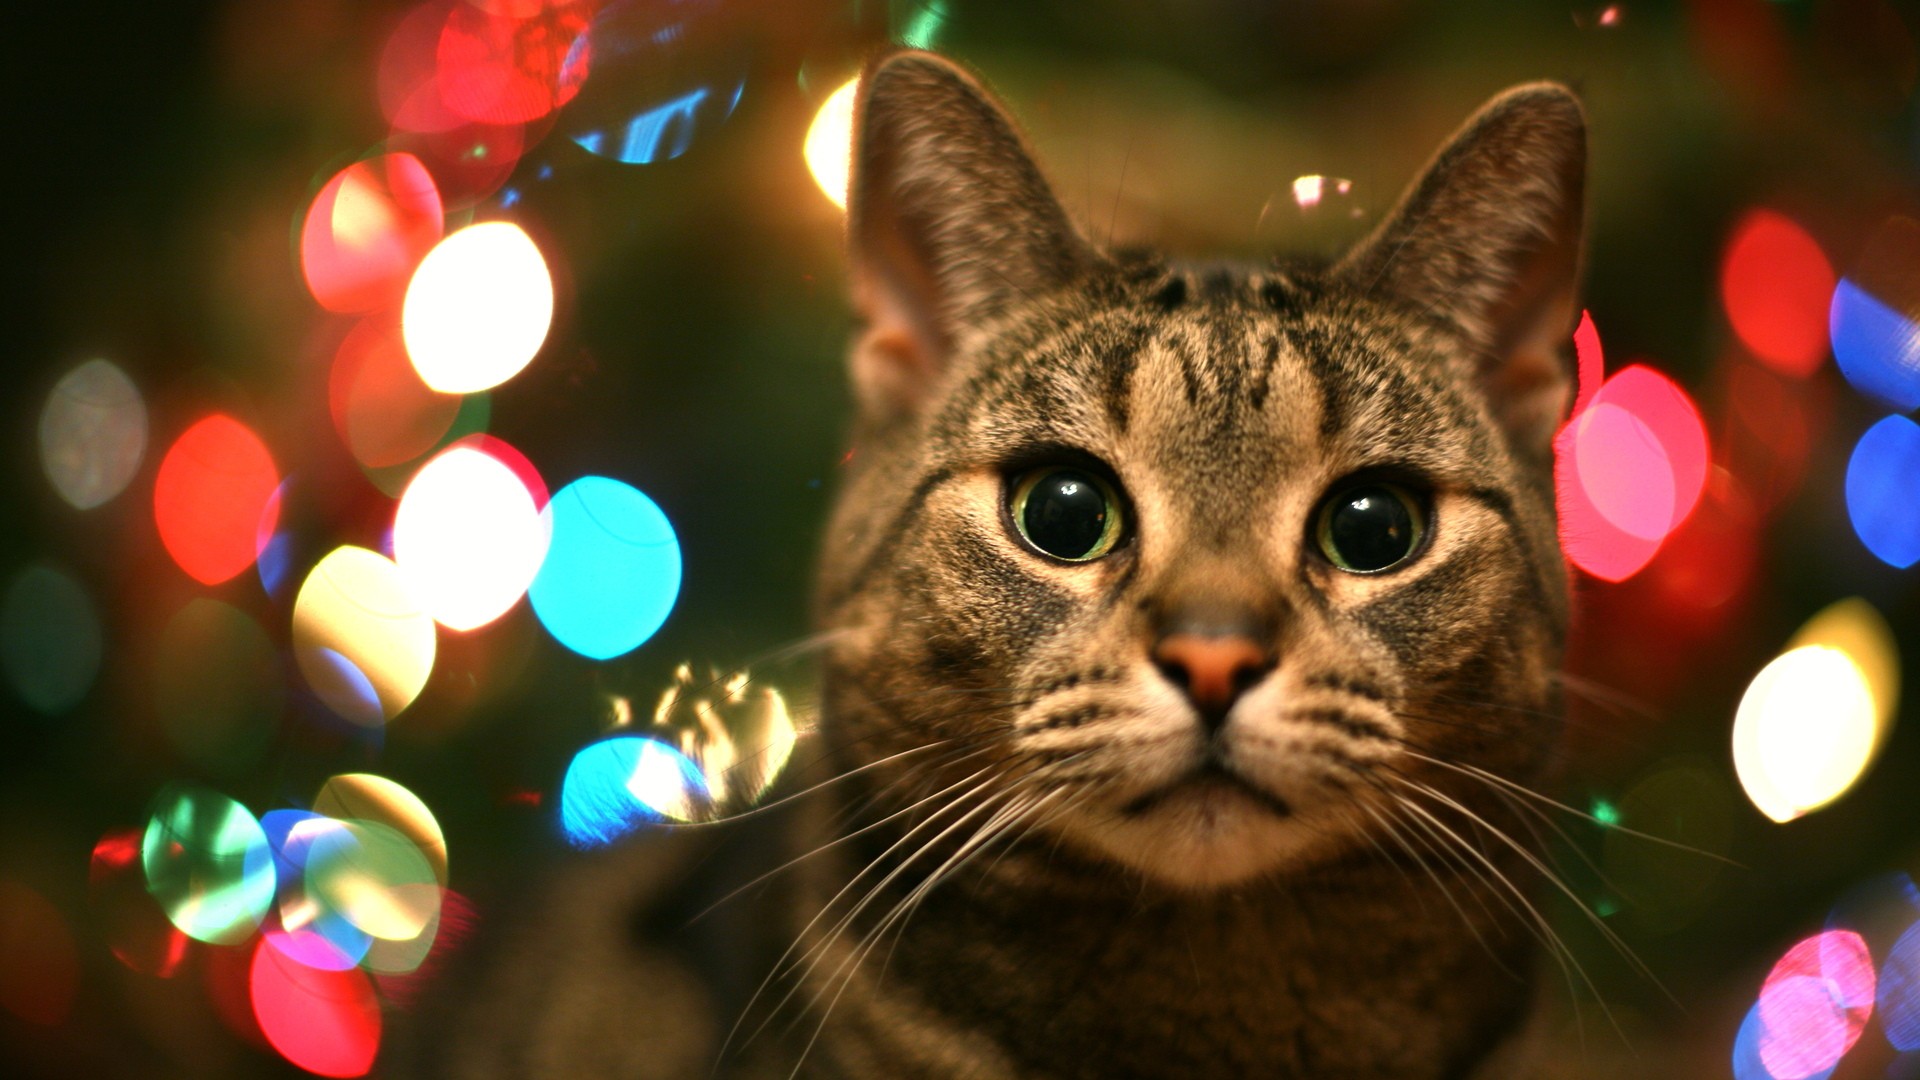 Animal Cute Cat Macro Wallpaper Desktop With